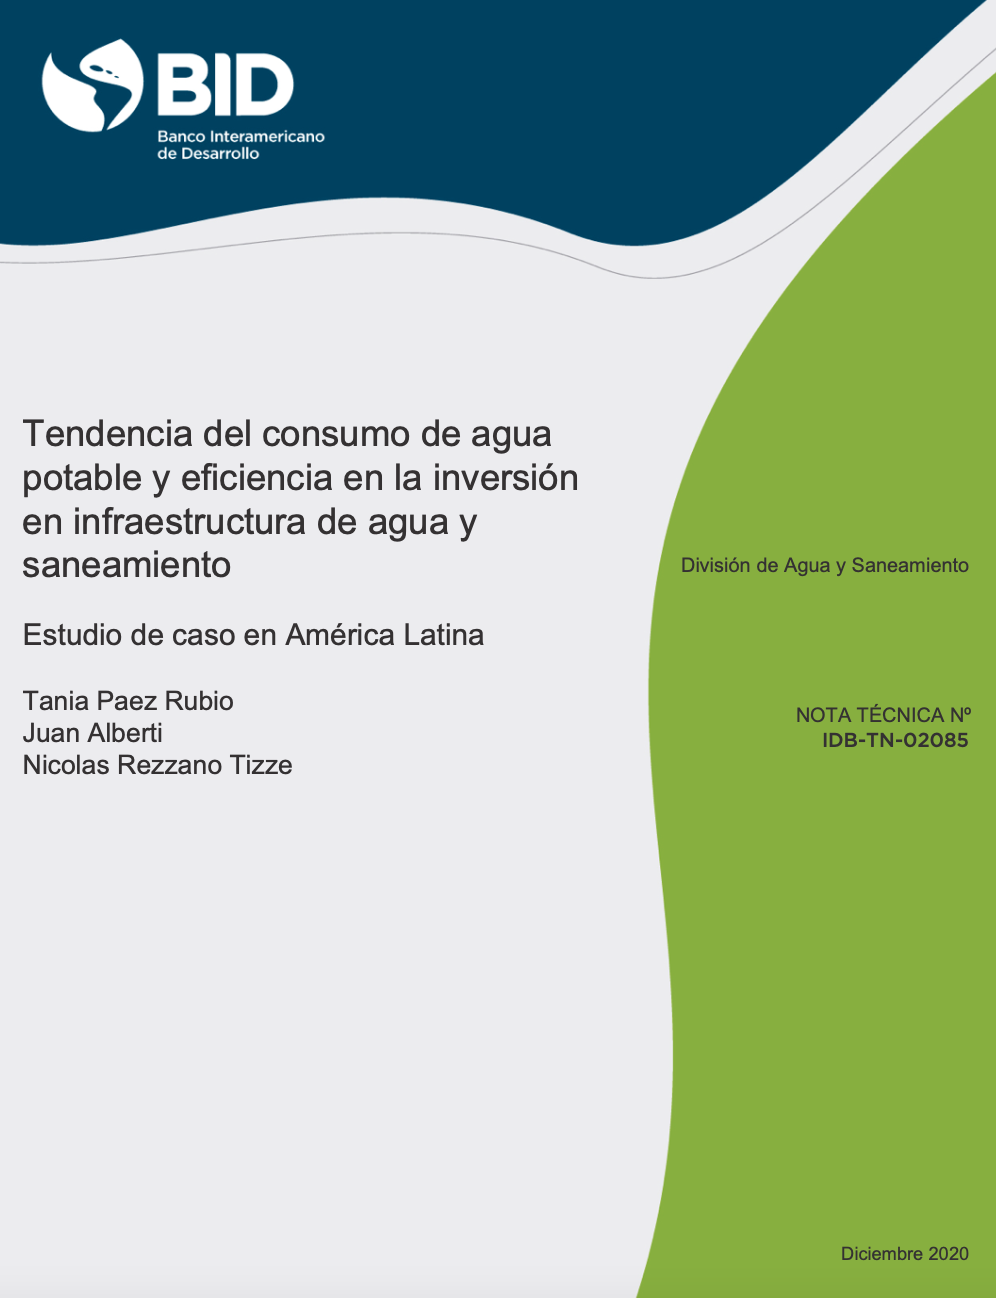 Tendencia del consumo de agua potable y eficiencia en la inversión en infraestructura de agua y saneamiento: Estudio de caso en América Latina